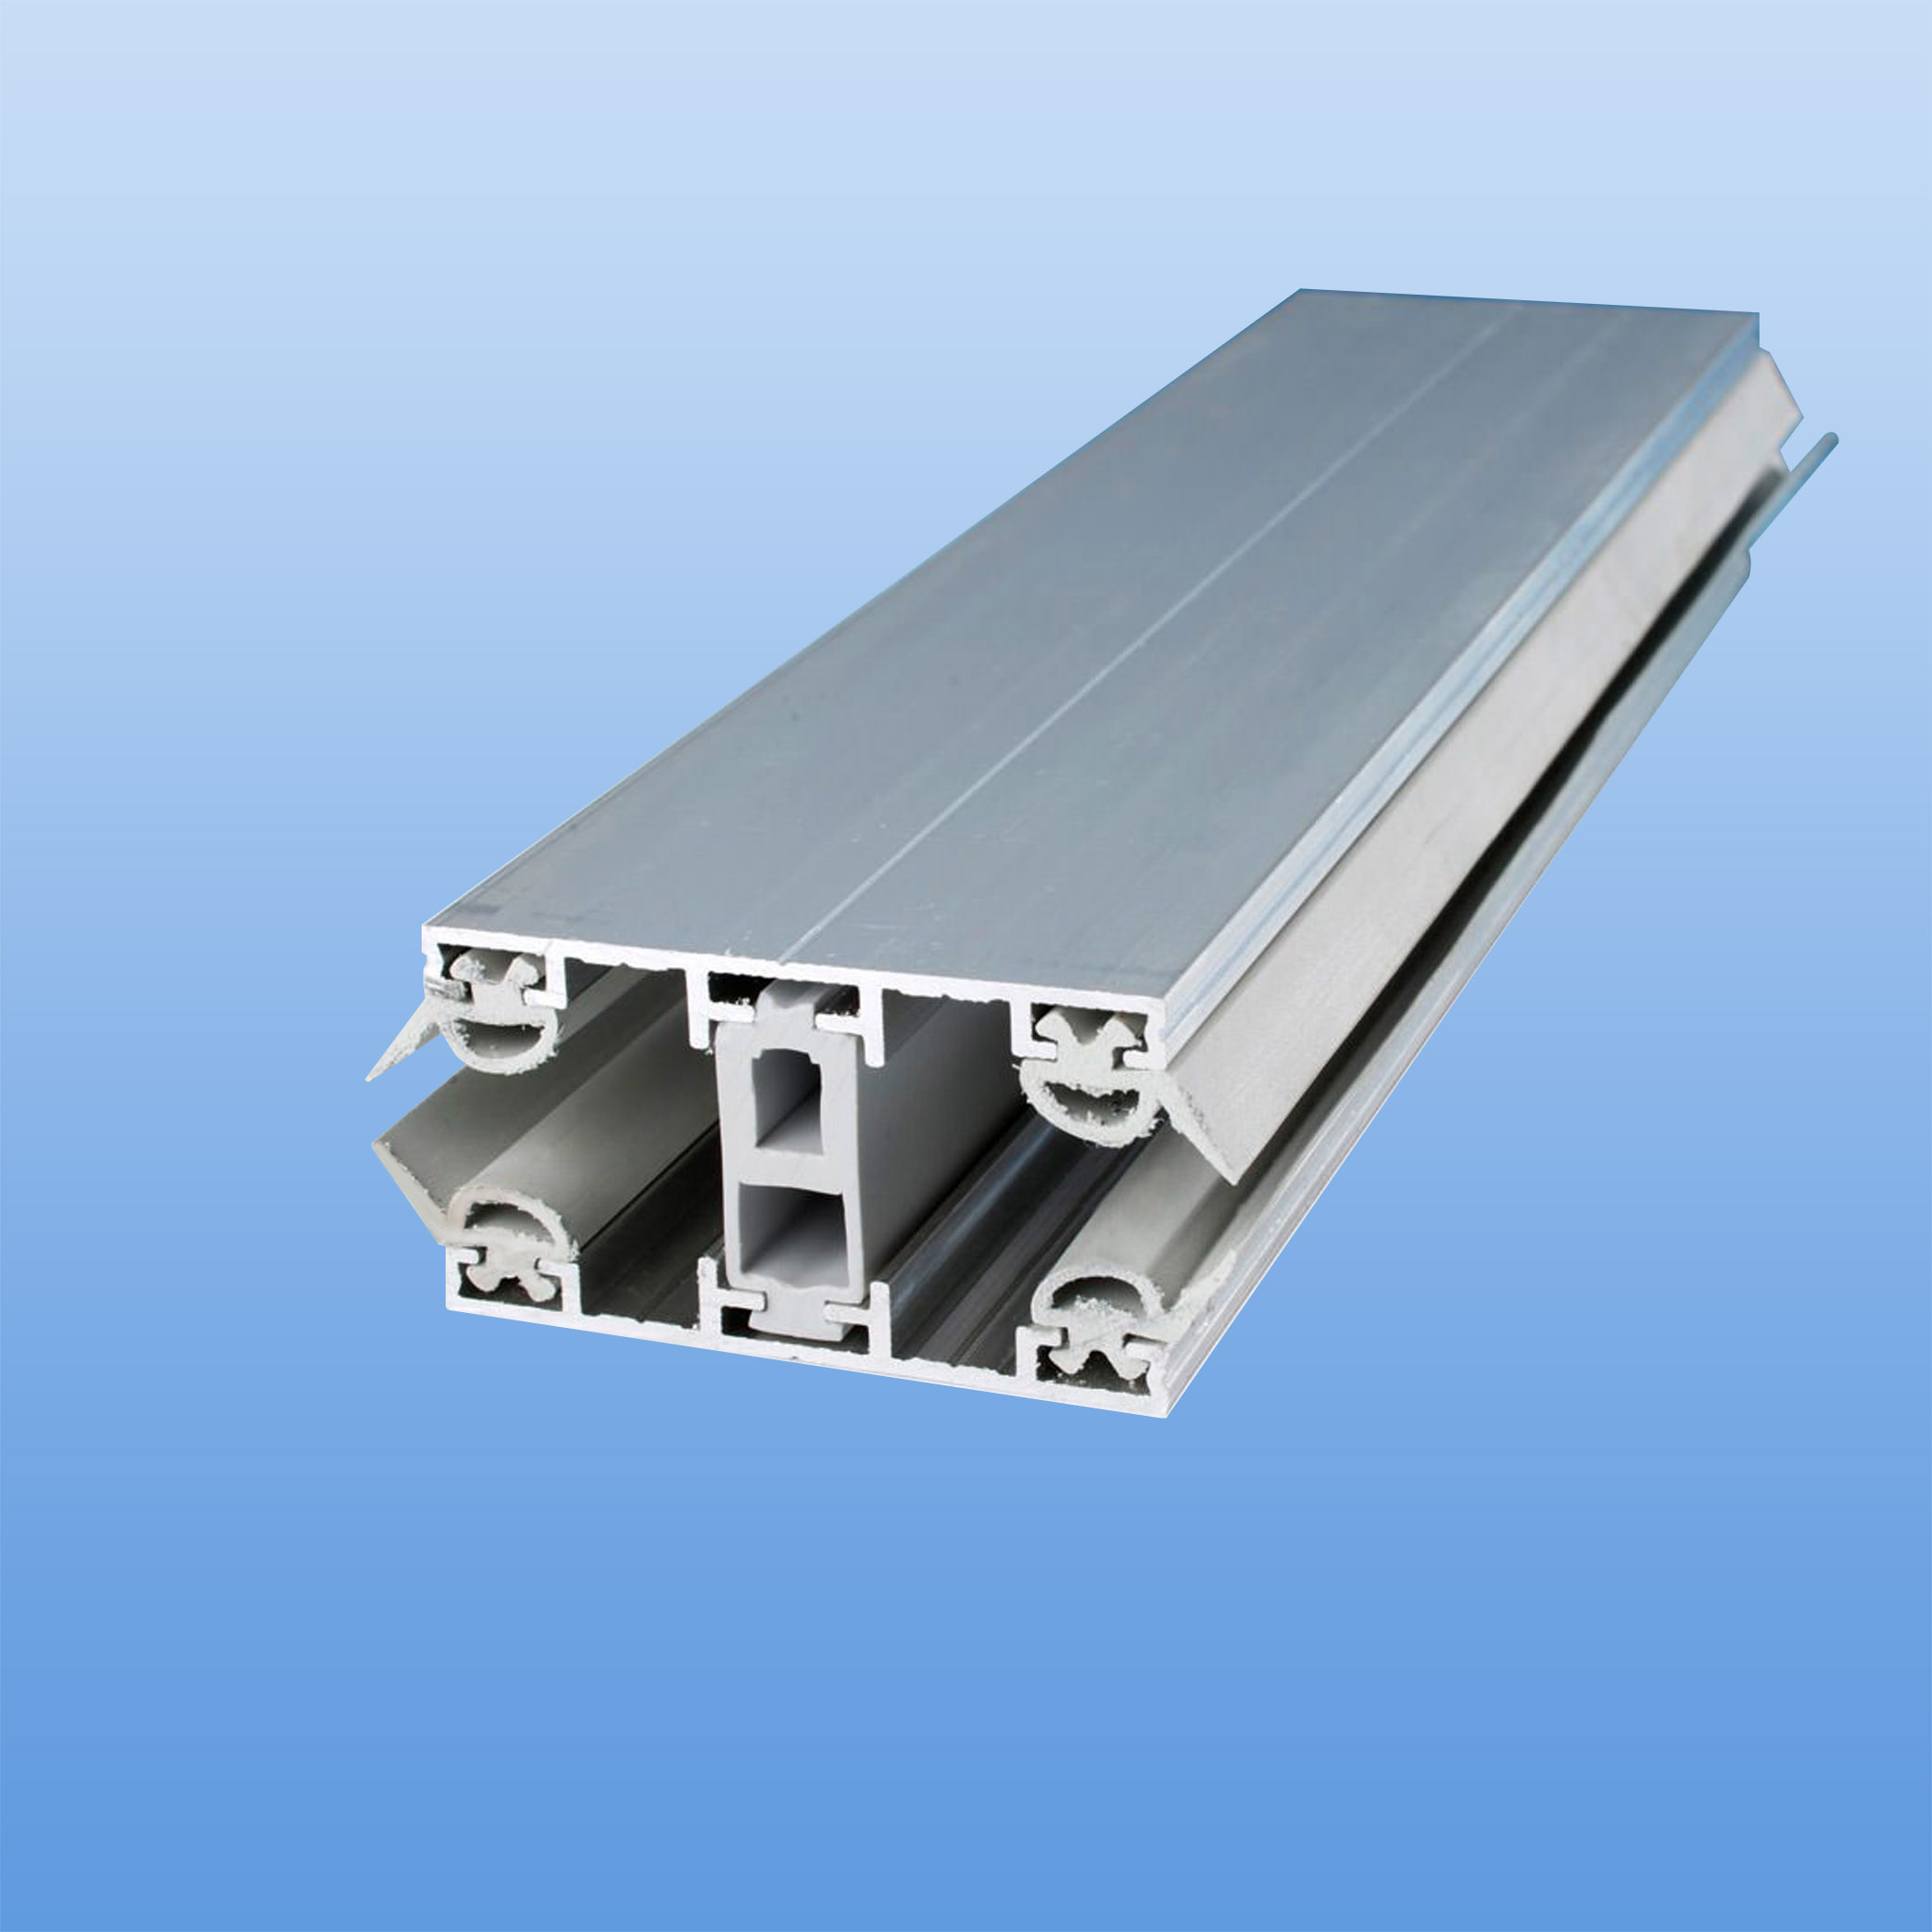 Verlegeprofil thermisch getrennt für 32mm Stegplatten (Verbindungsprofil) - 80mm